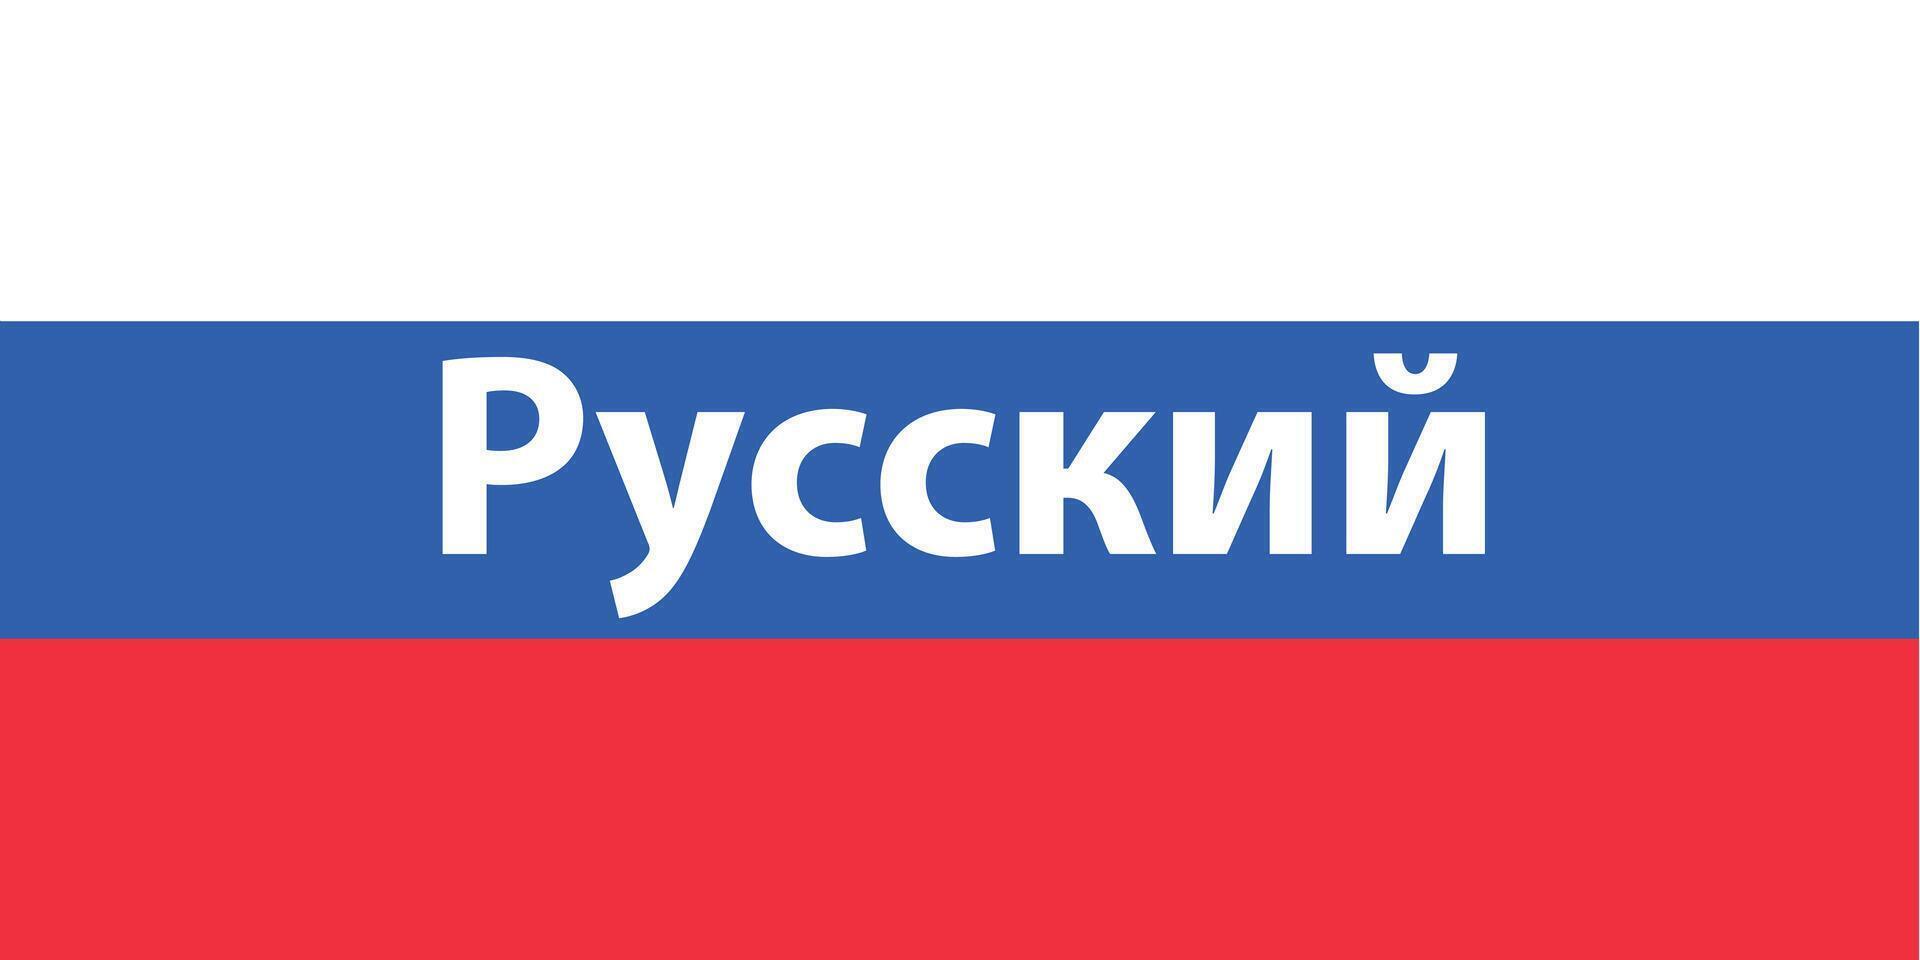 Hablando ruso. palabra en bandera de Rusia, bandera vector